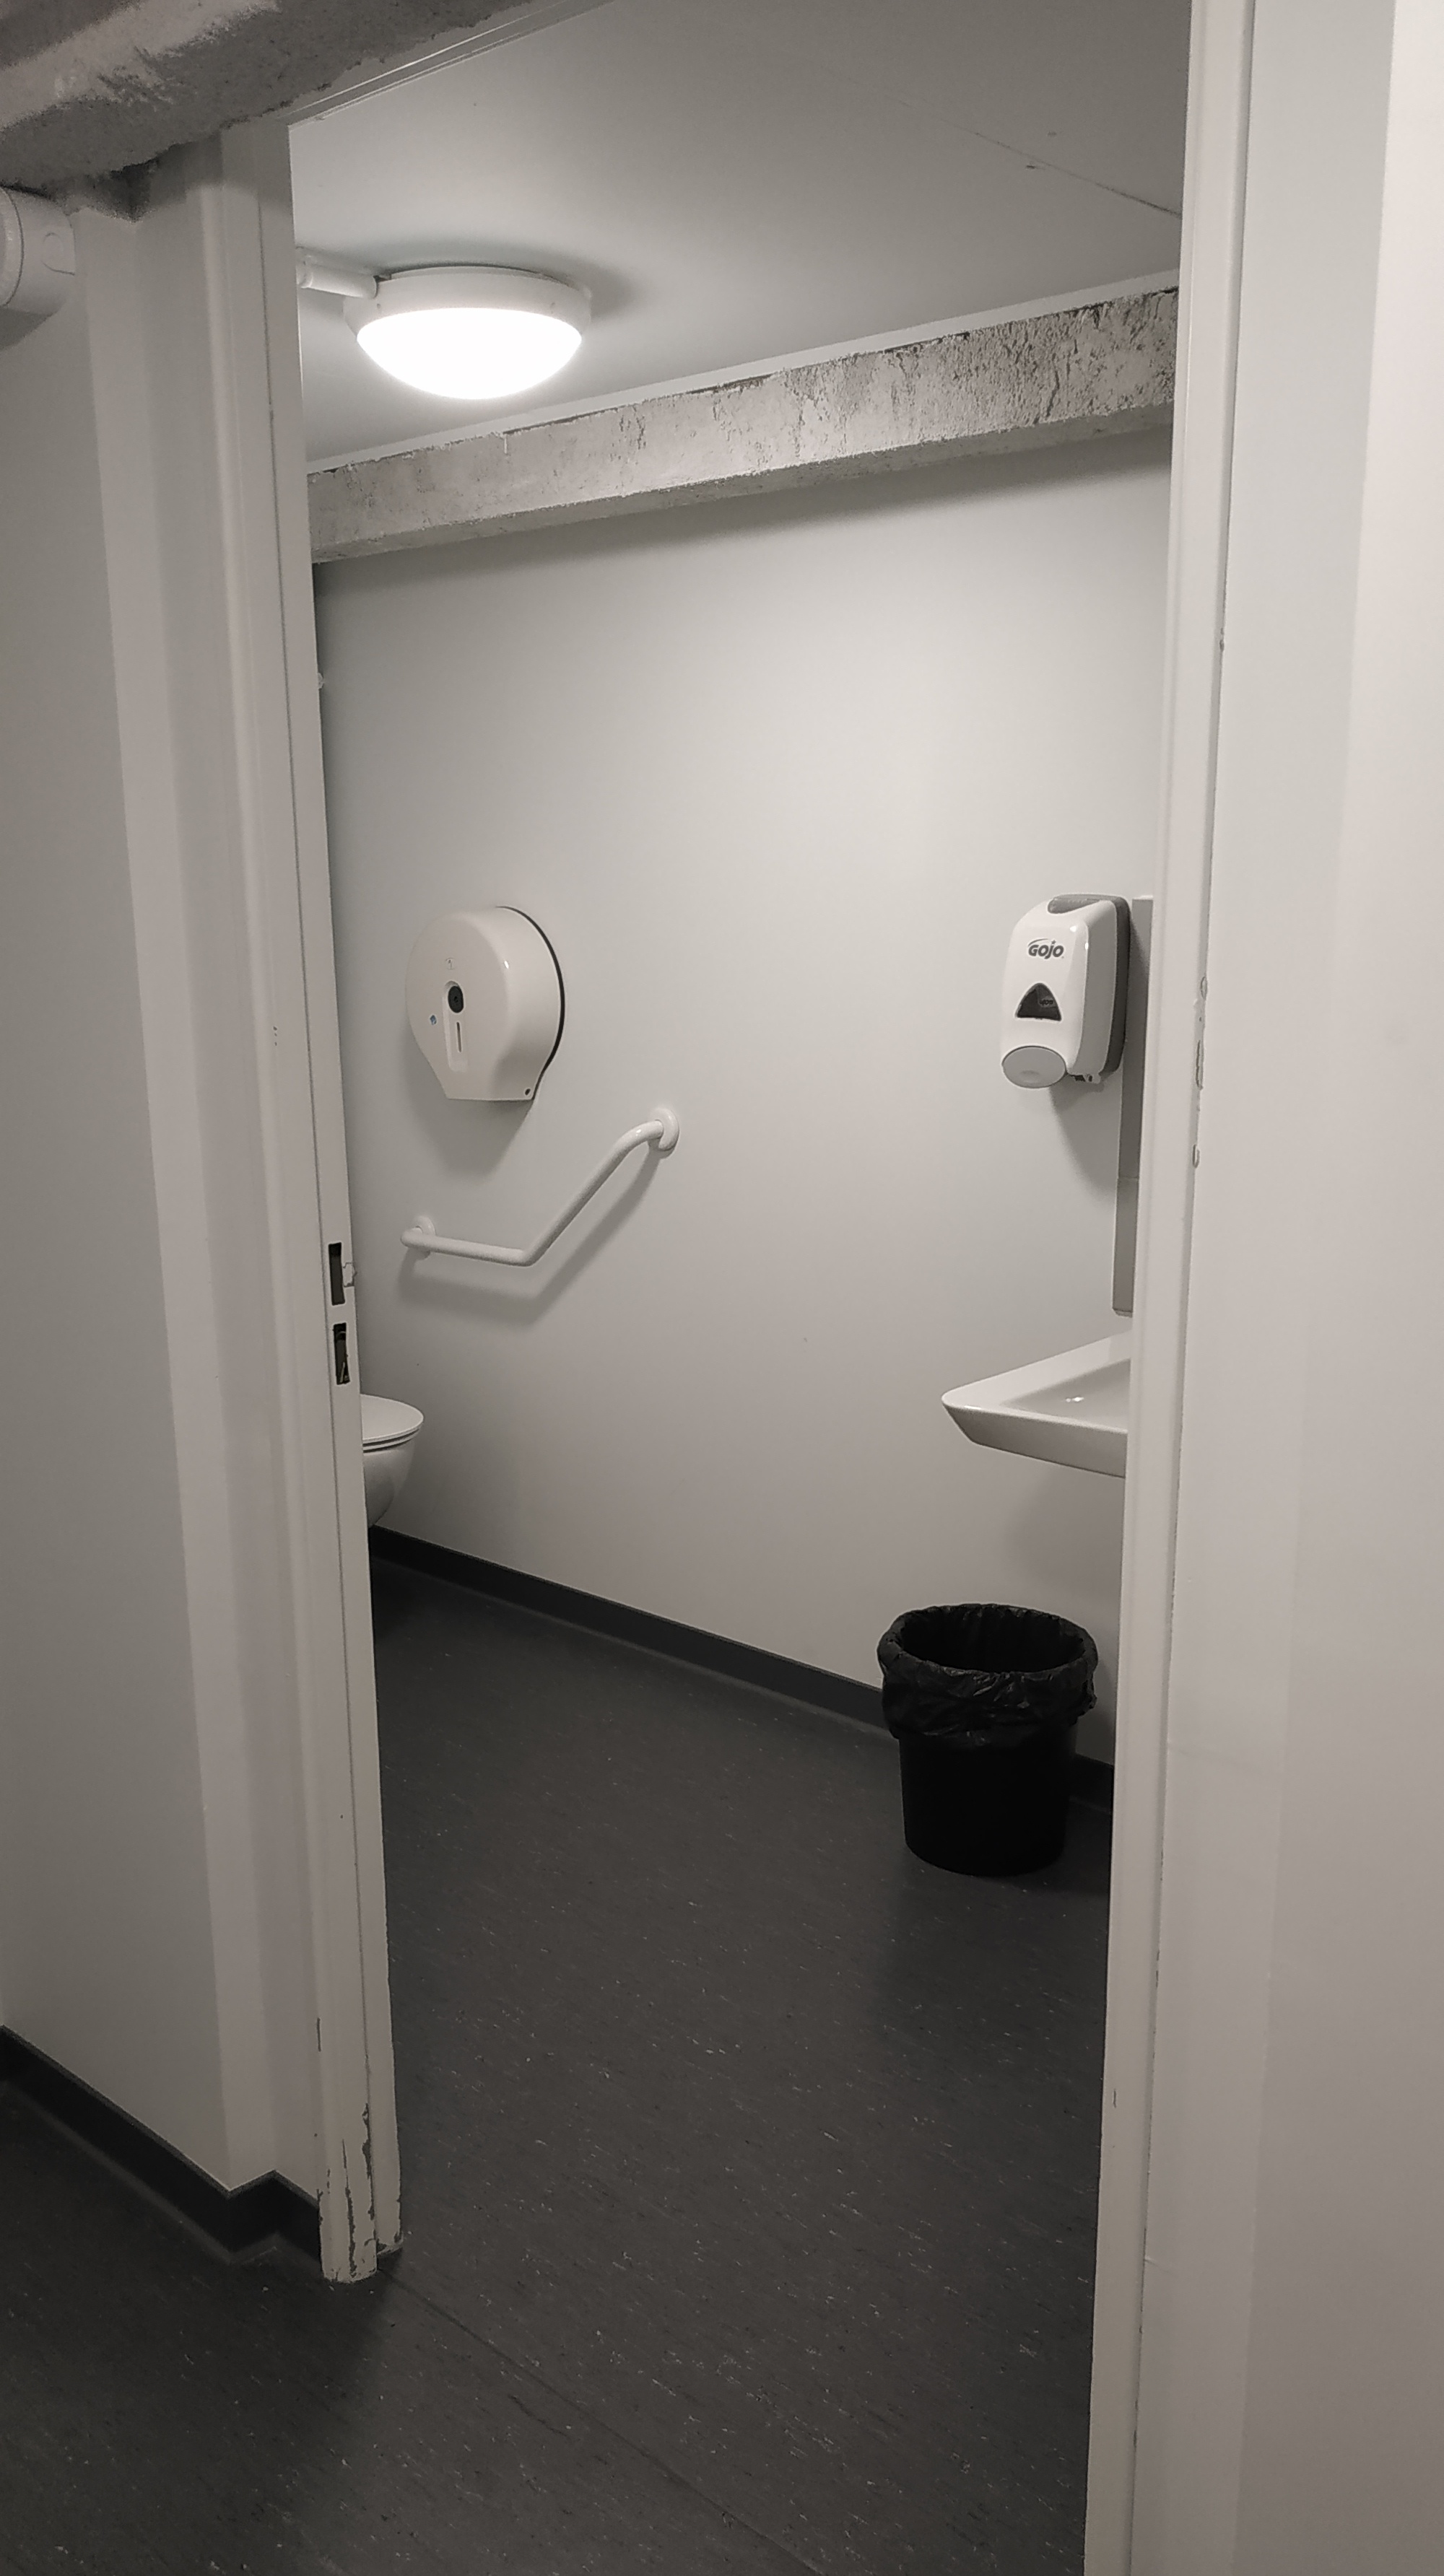 Porte ouverte dans les toilettes pour handicapés. On y voit un morceau de la pièce.